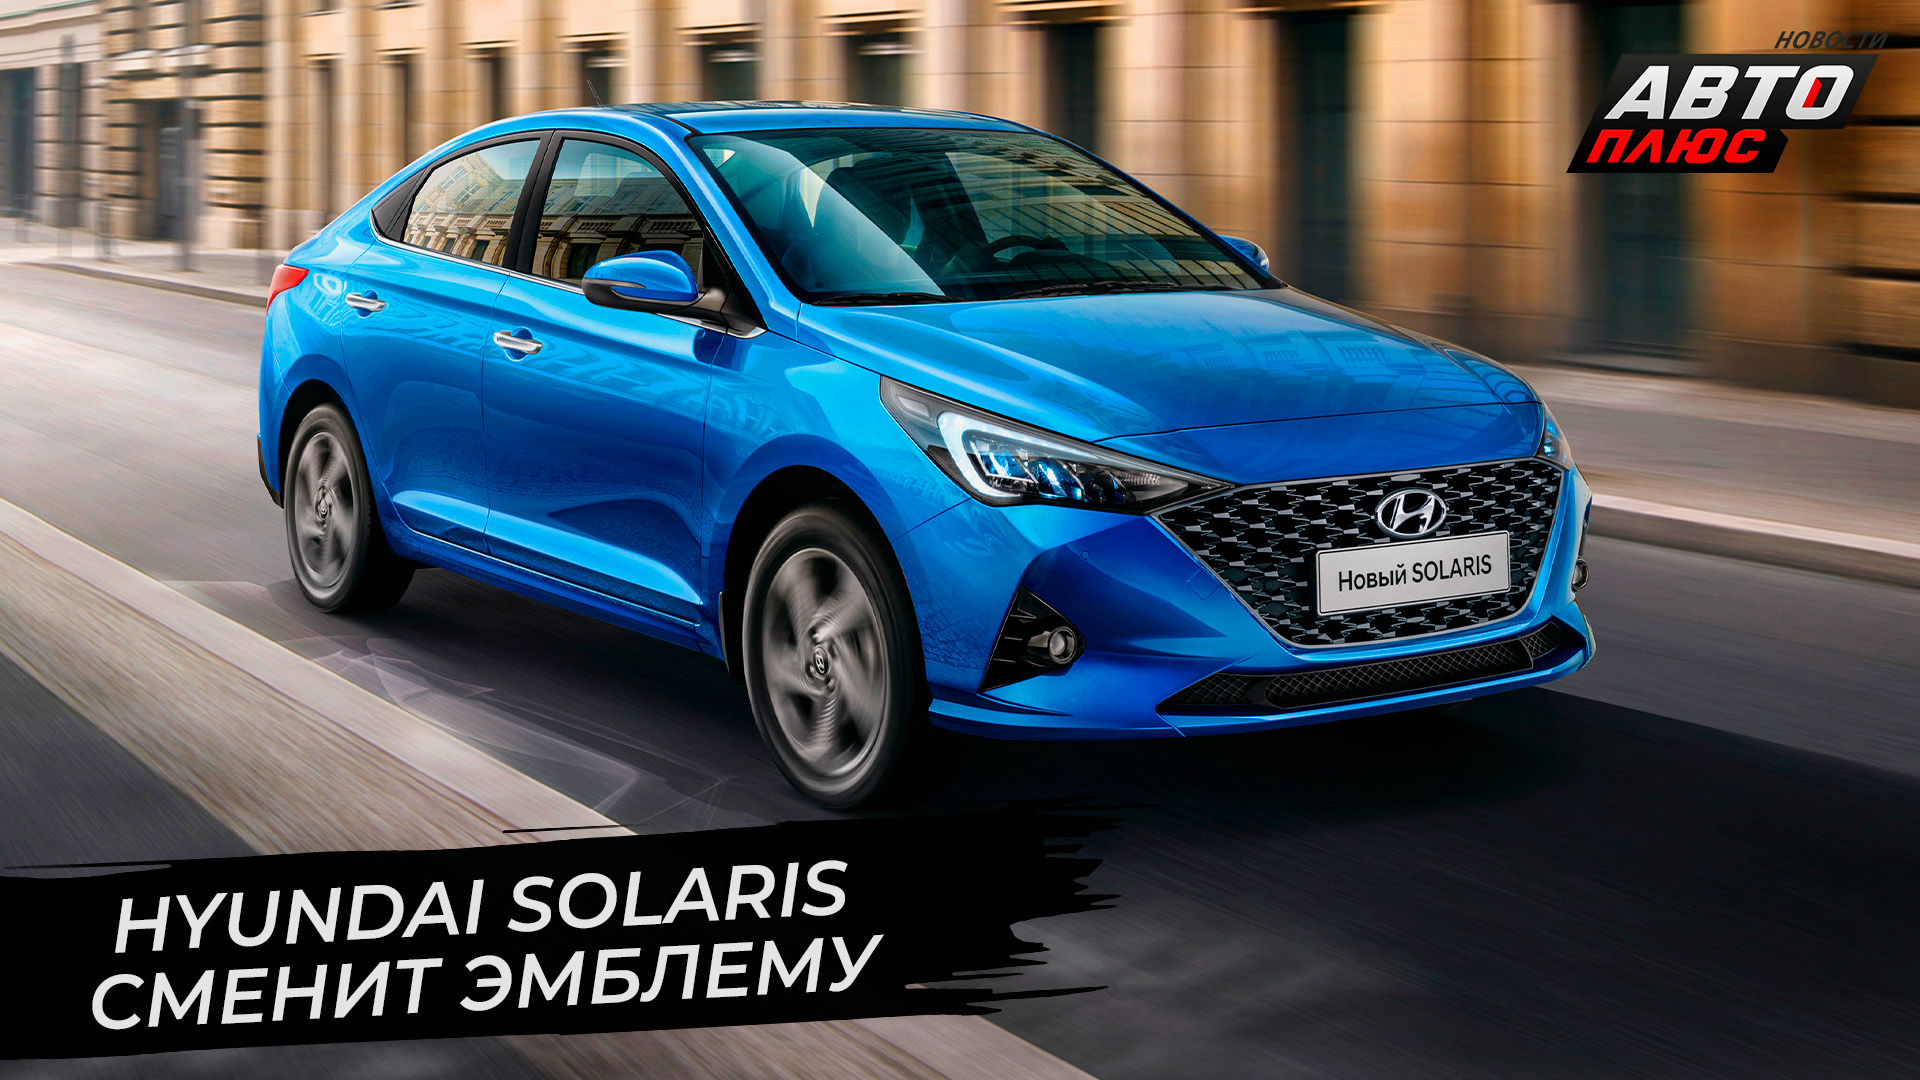 Hyundai Solaris сменит эмблему в России | Новости с колёс №2745